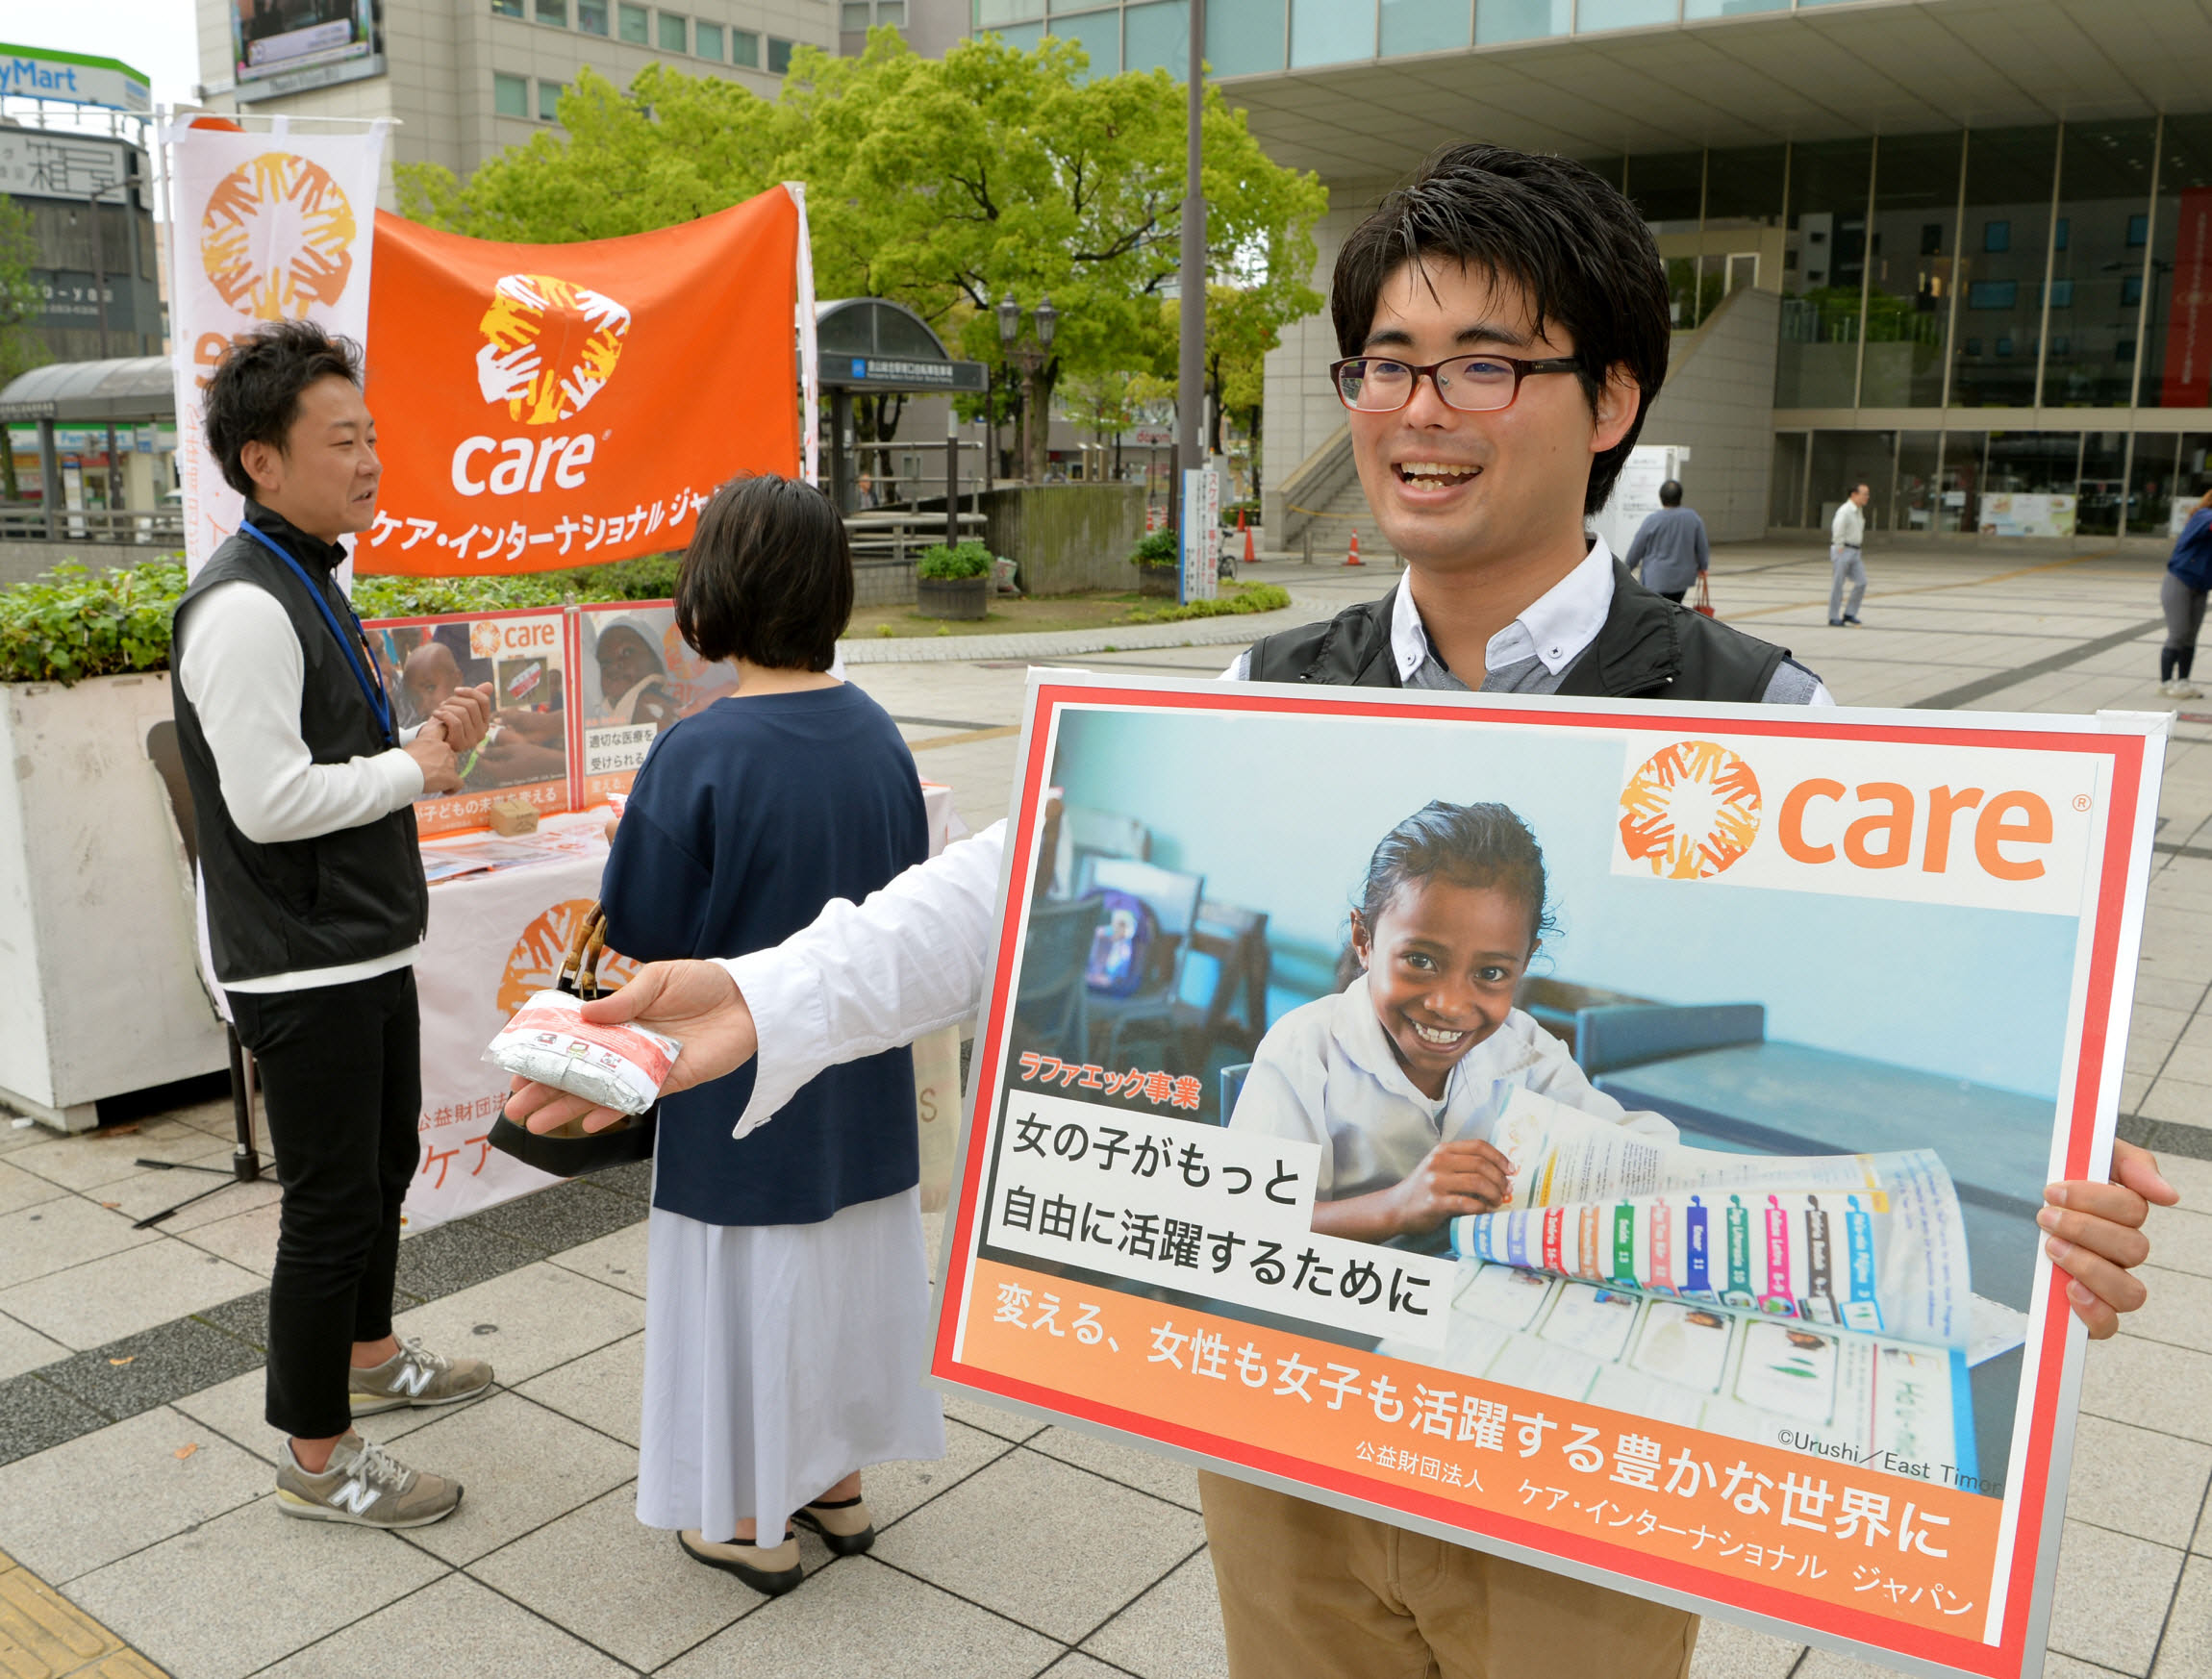 関東と愛知県にて、街頭キャンペーン実施しています